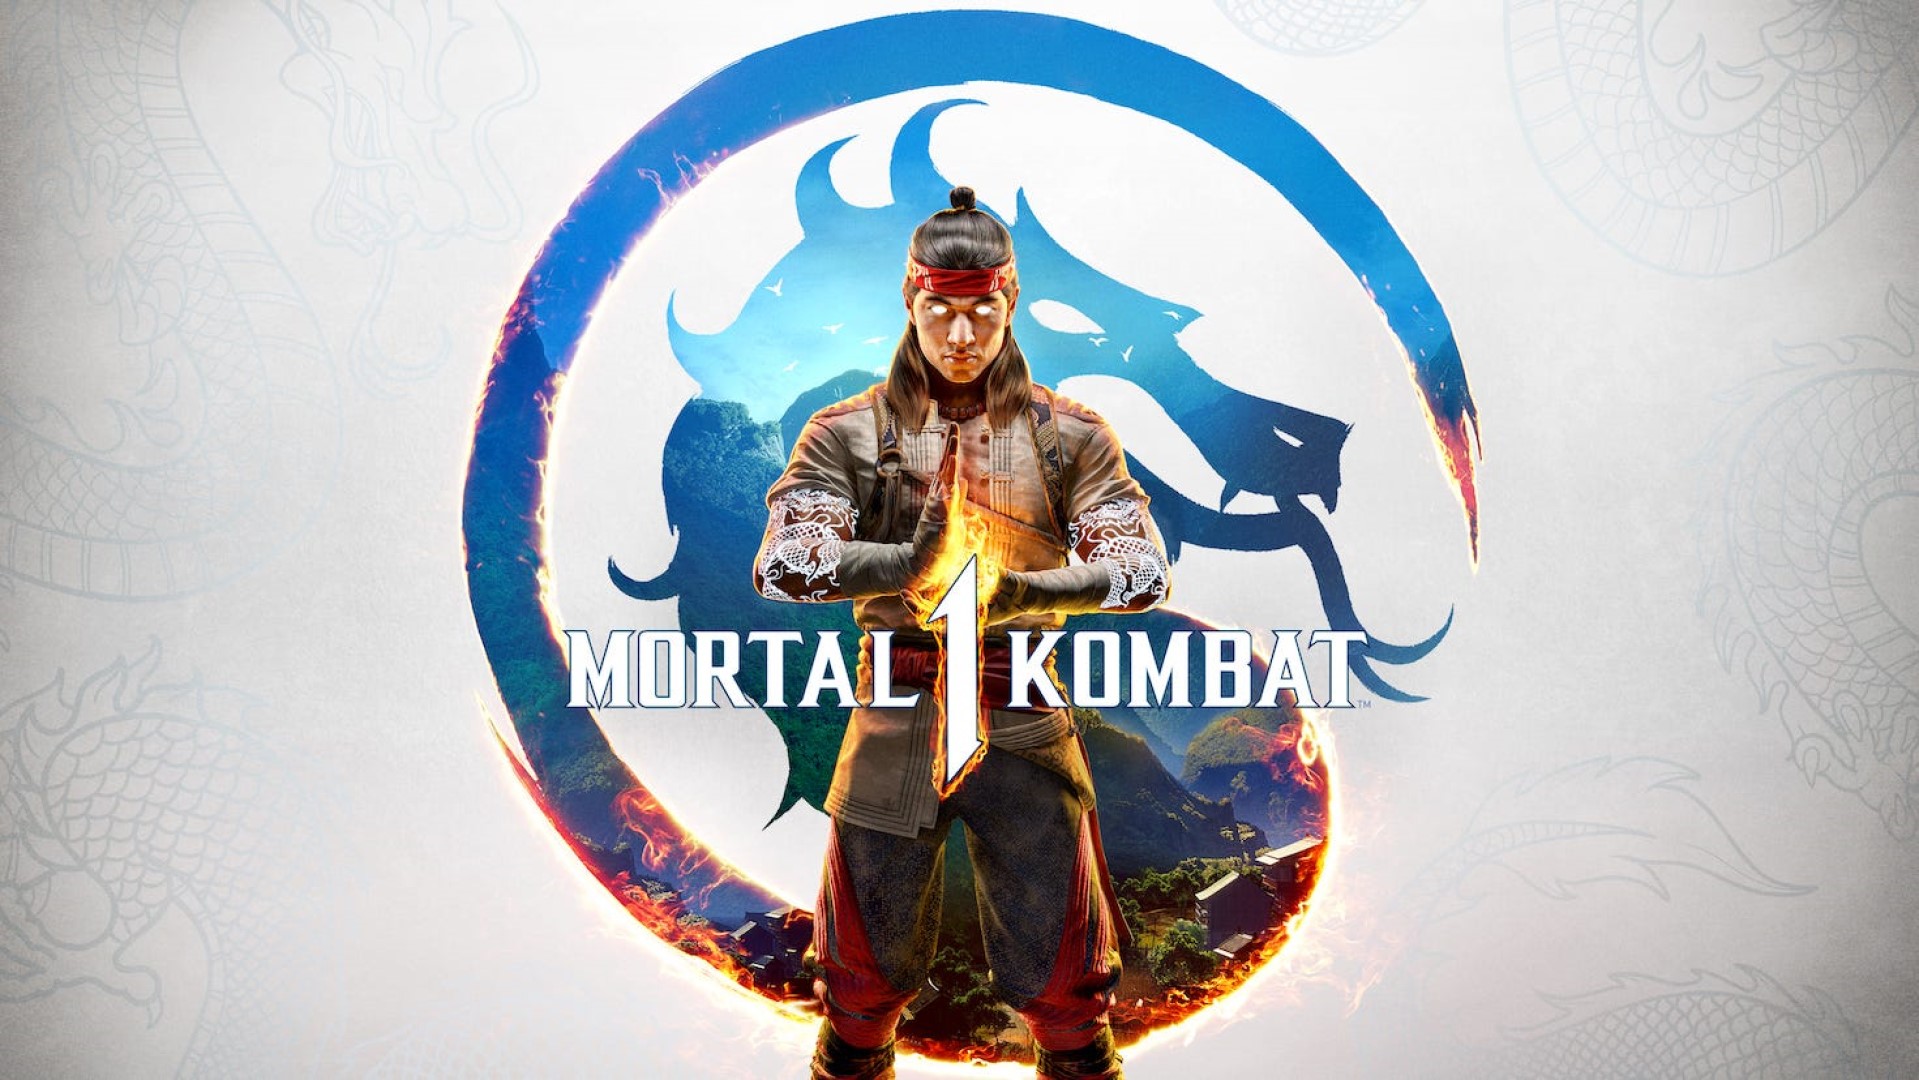 Mortal Kombat 1 – 15 Ways It’s Different From Mortal Kombat 11